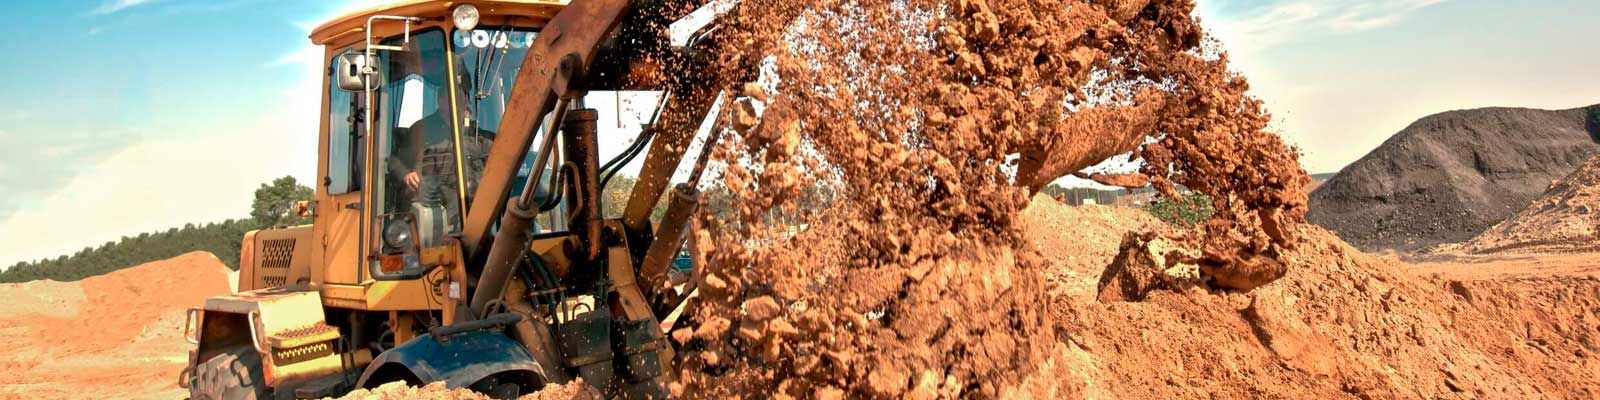 Excavacions Masdeu maquinaria removiendo tierra